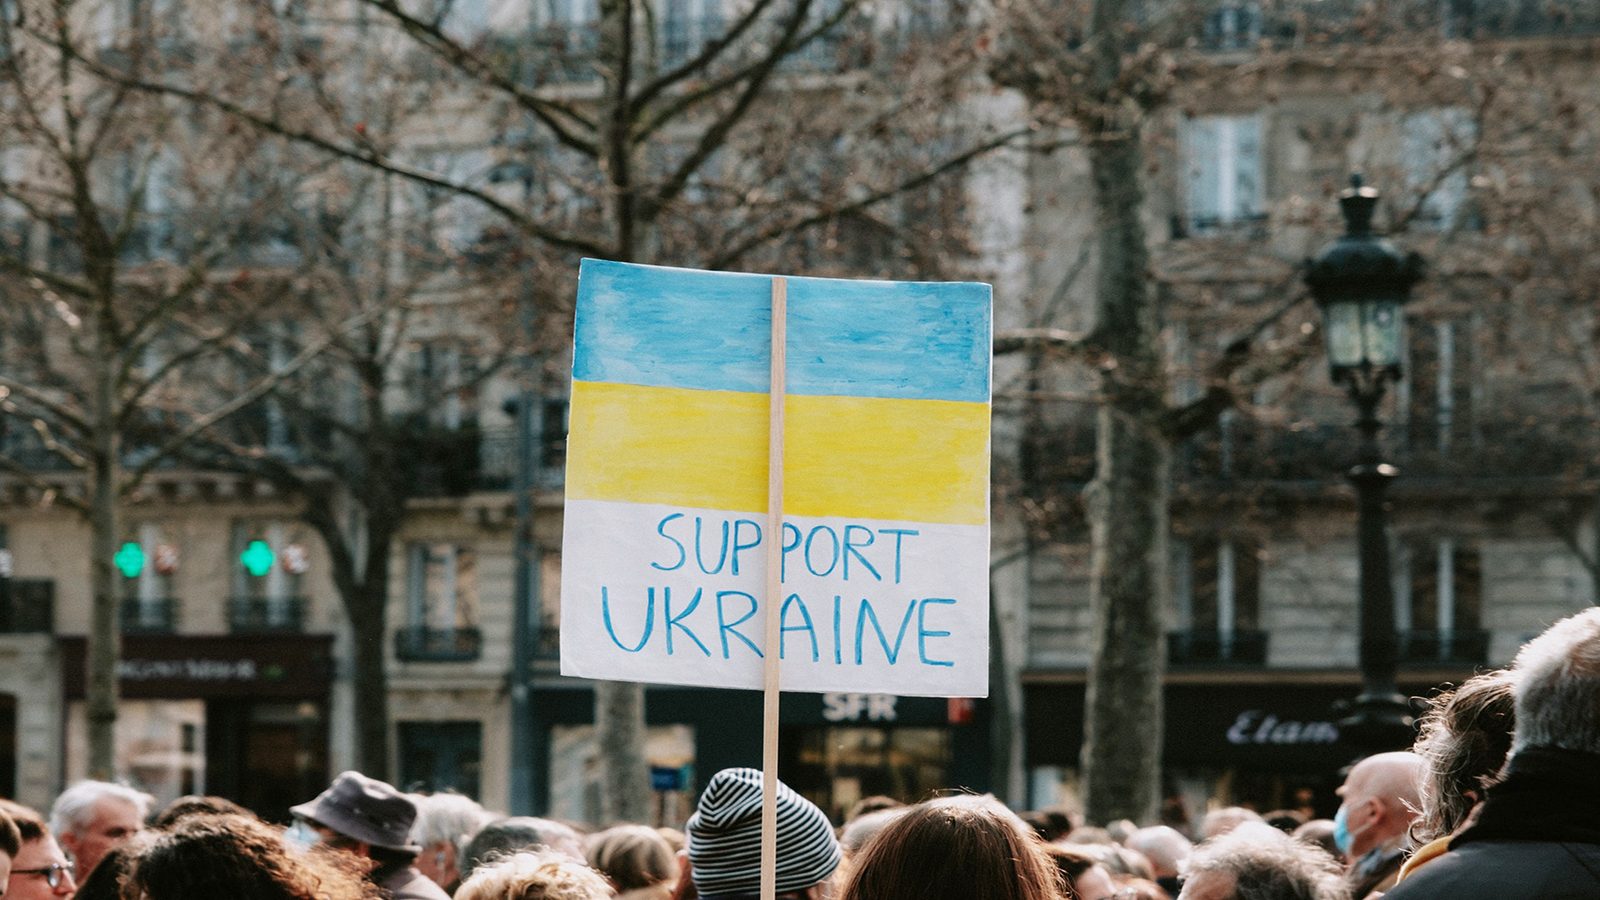 Support Ukraine homemade flag